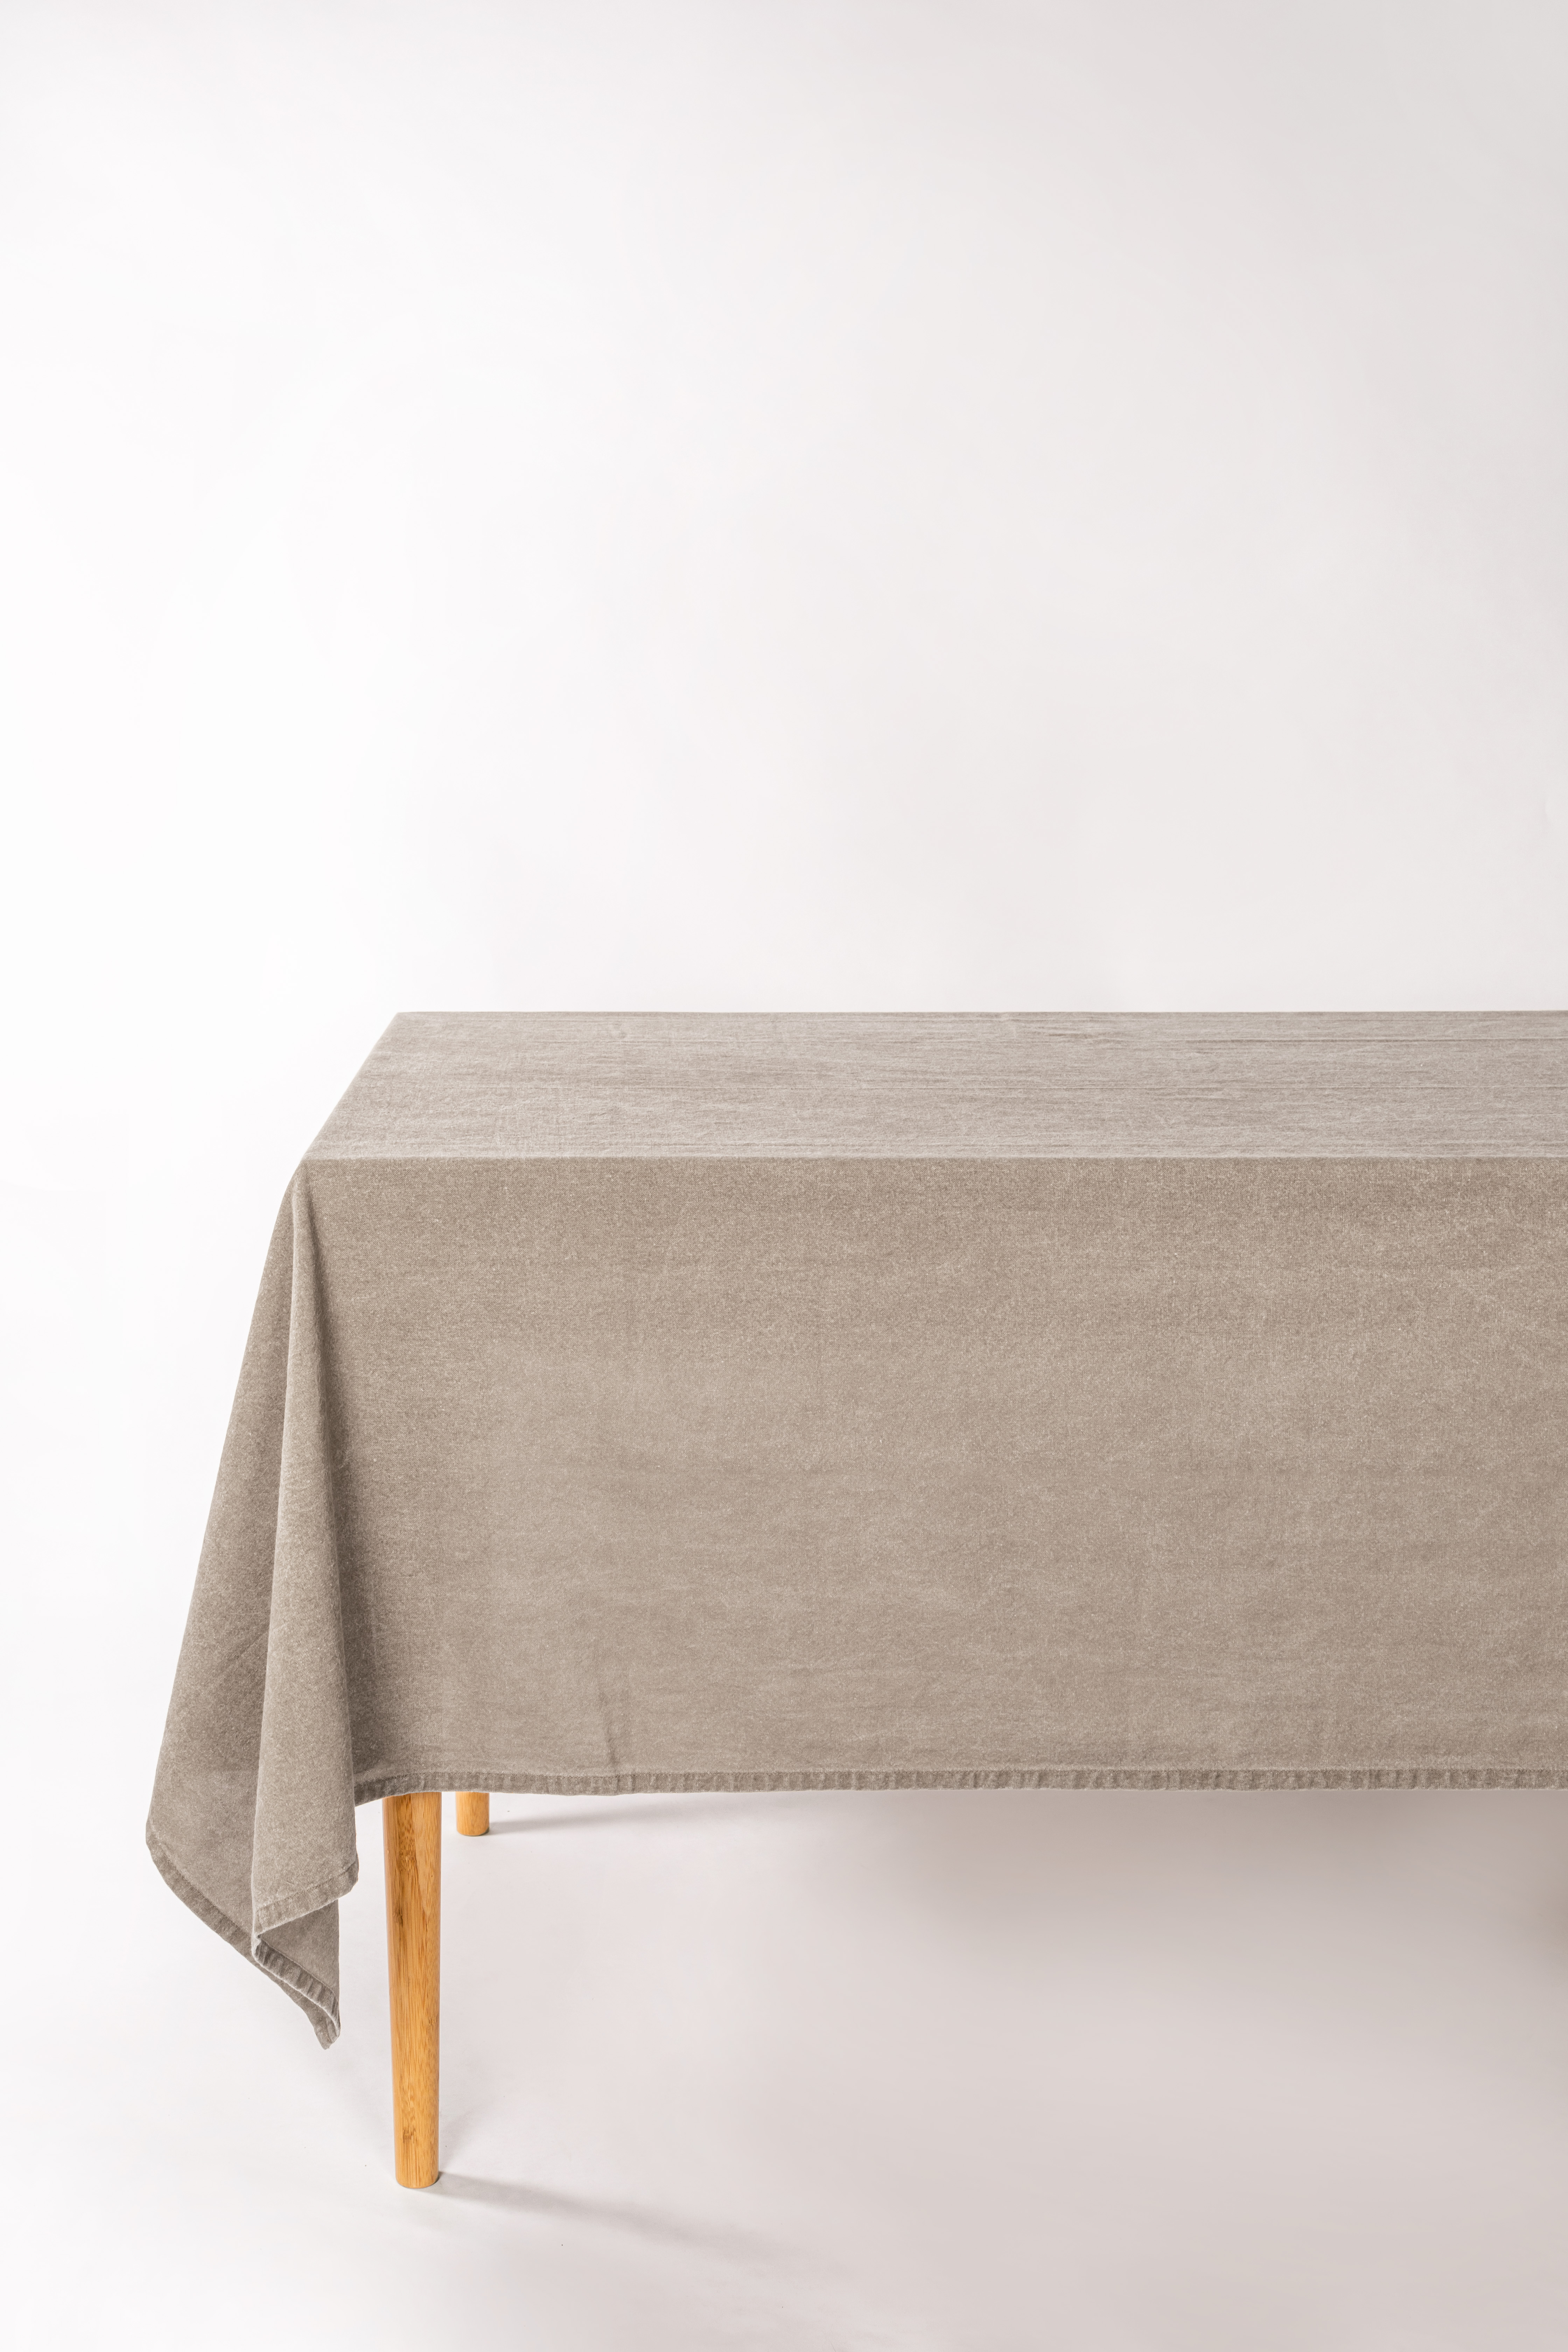 Table cloth MYRNA 145x300cm - taupe